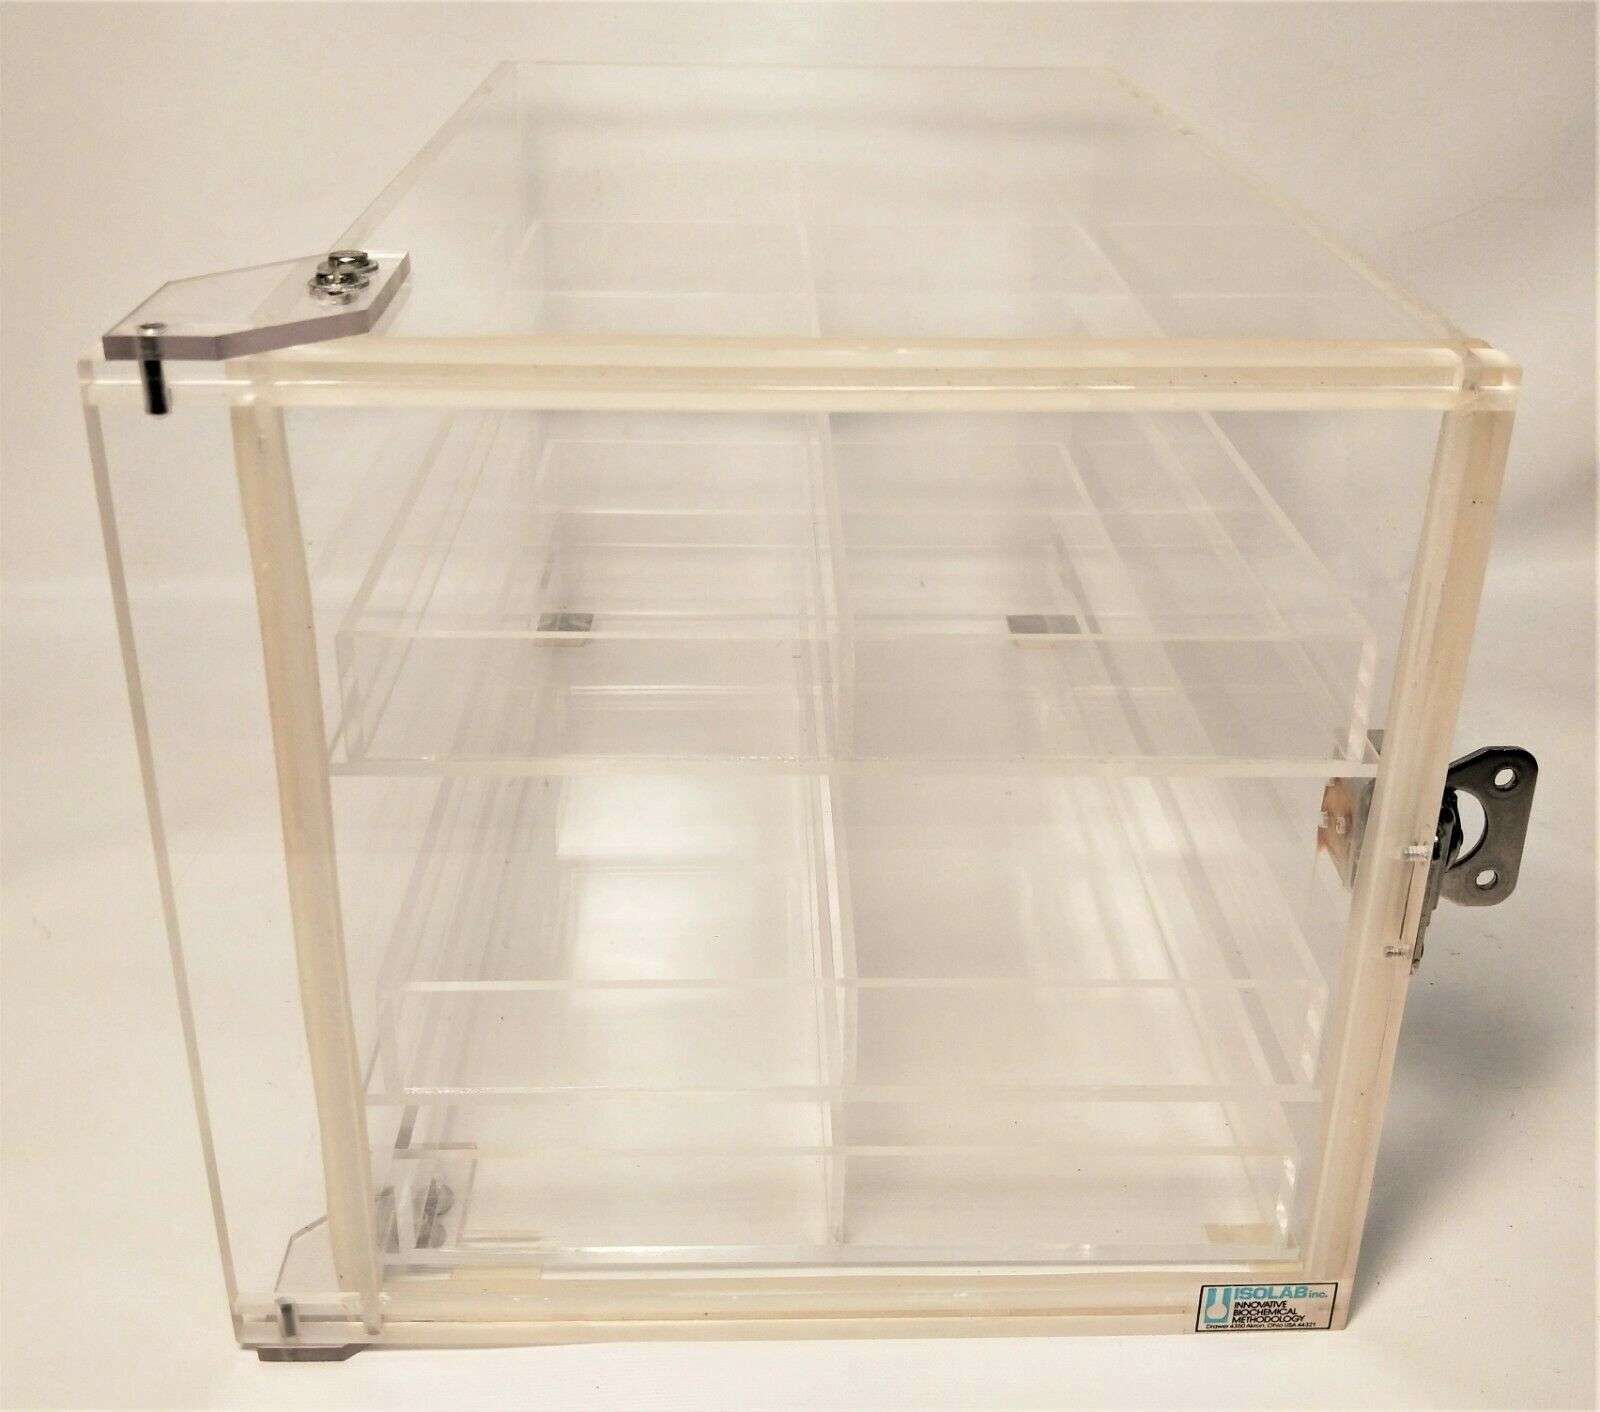 Isolab Acrylic Desiccator Cabinet